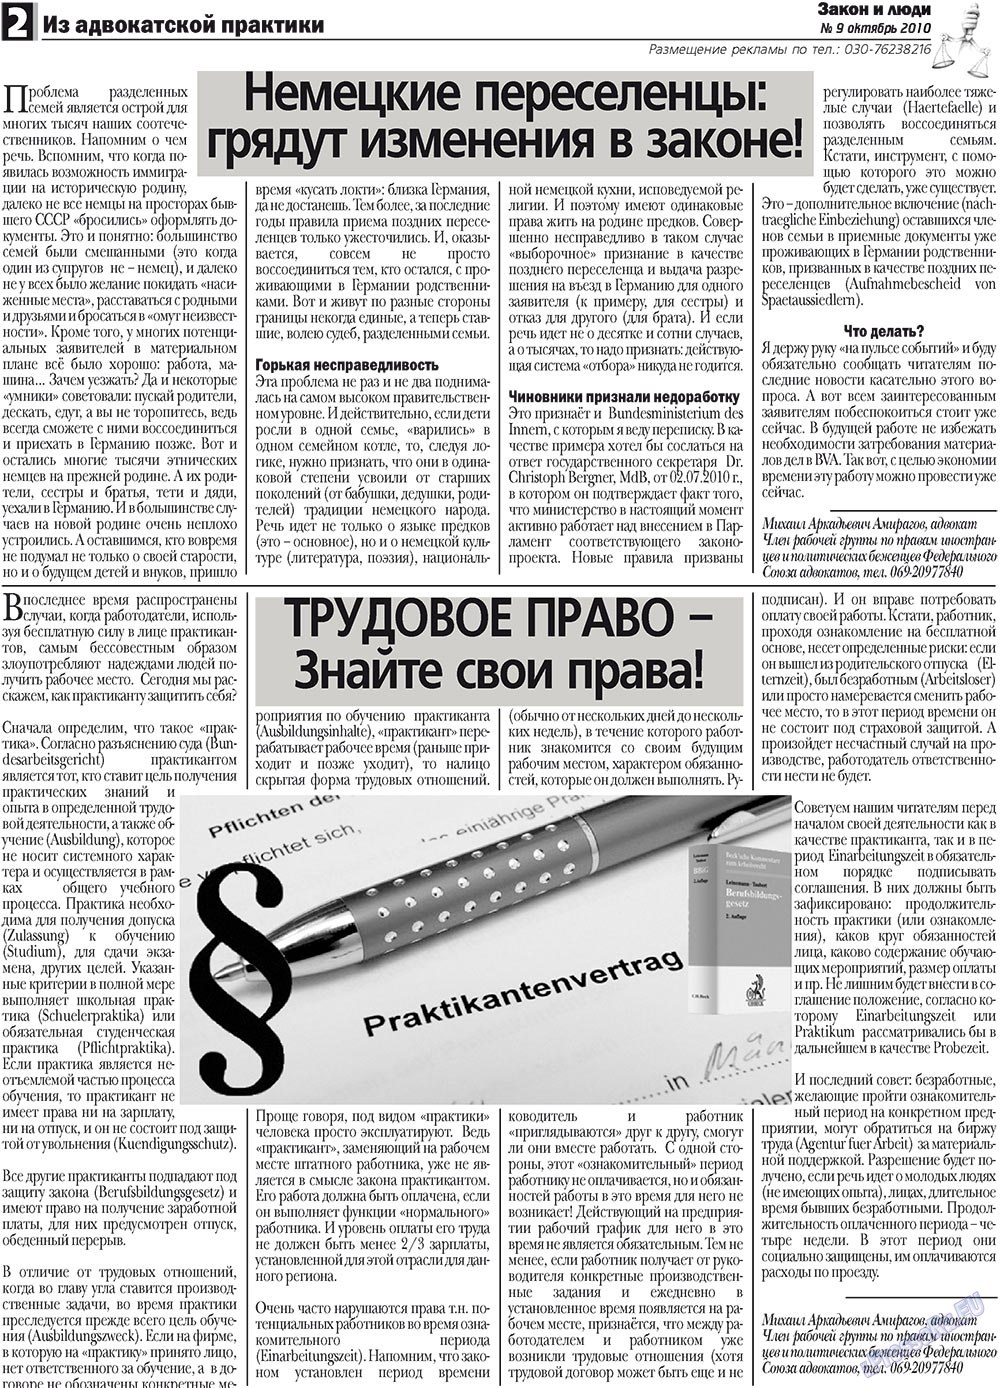 Закон и люди, газета. 2010 №9 стр.2